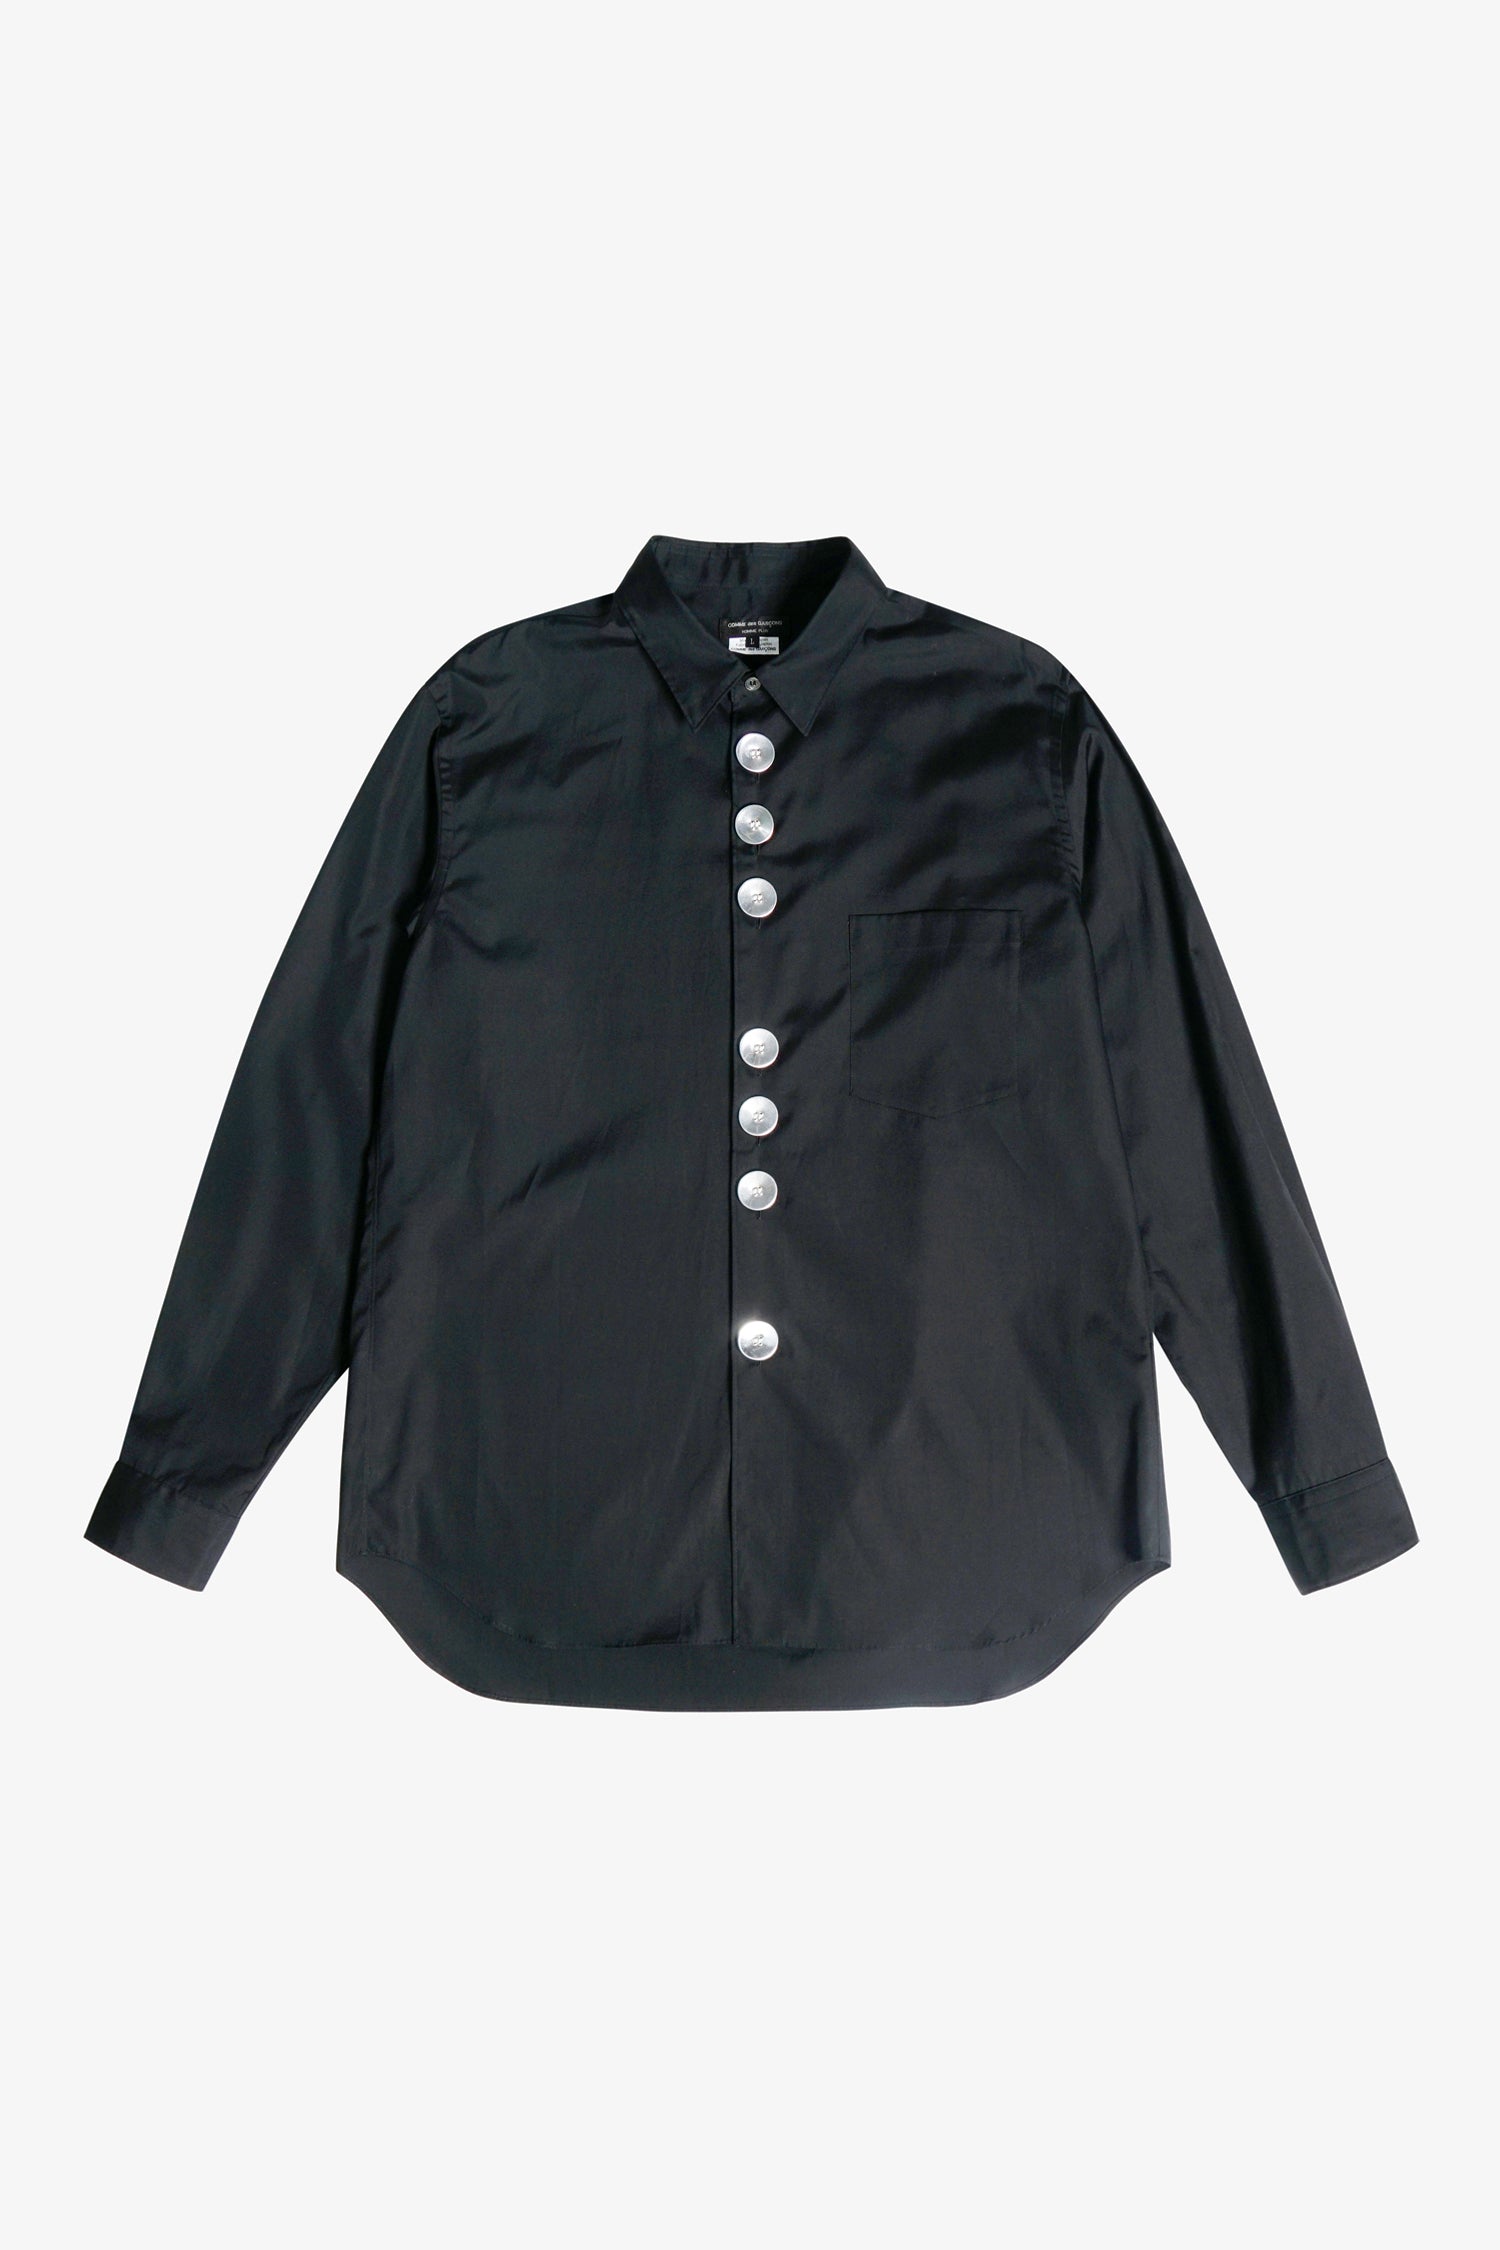 Selectshop FRAME - COMME DES GARÇONS HOMME PLUS Big Buttons Shirt Shirts Dubai